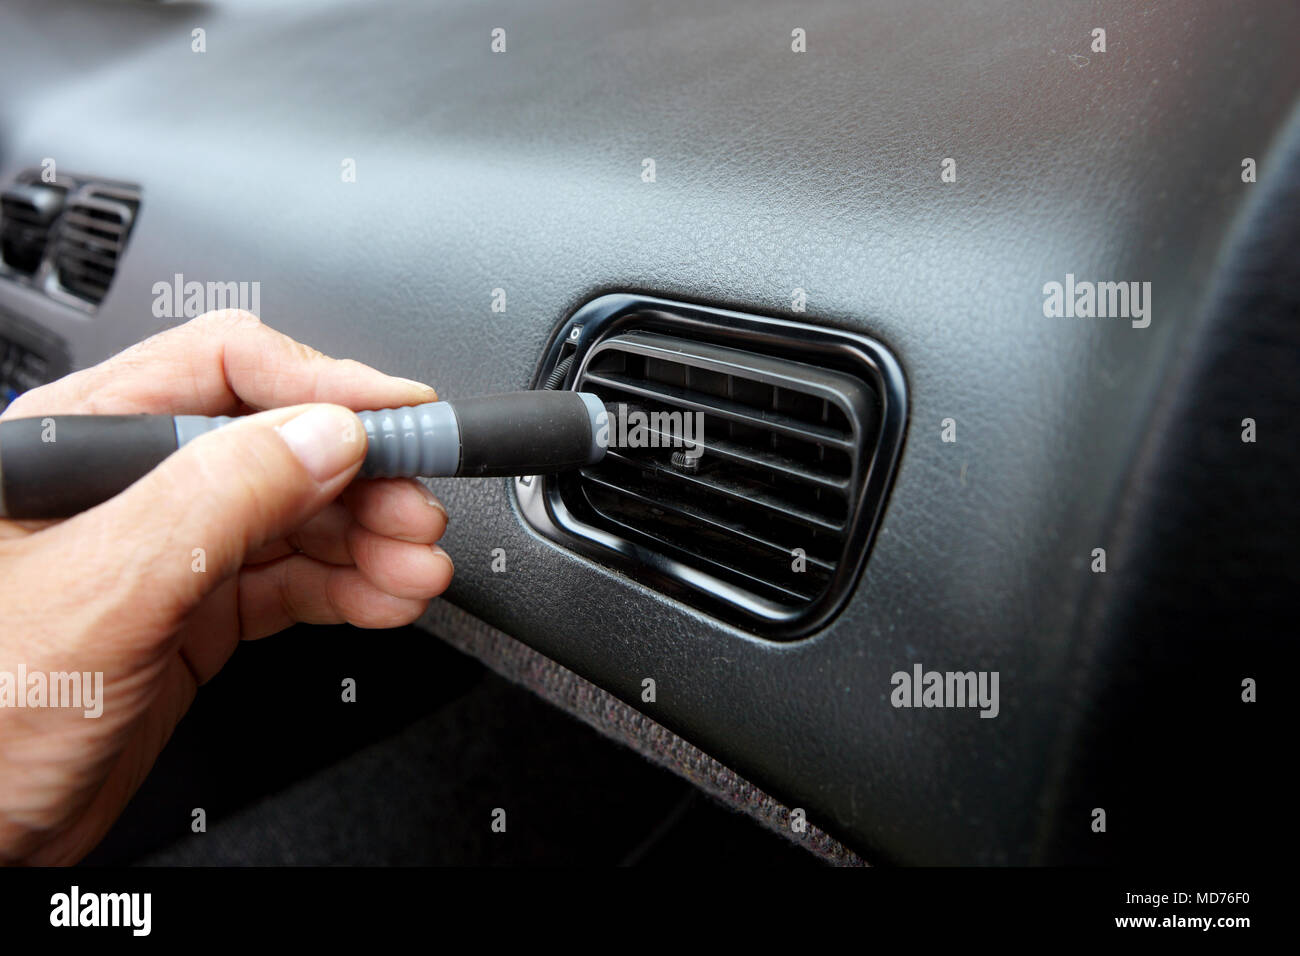 Car Ventilation Vent Grille Stock Image - Image of adjust